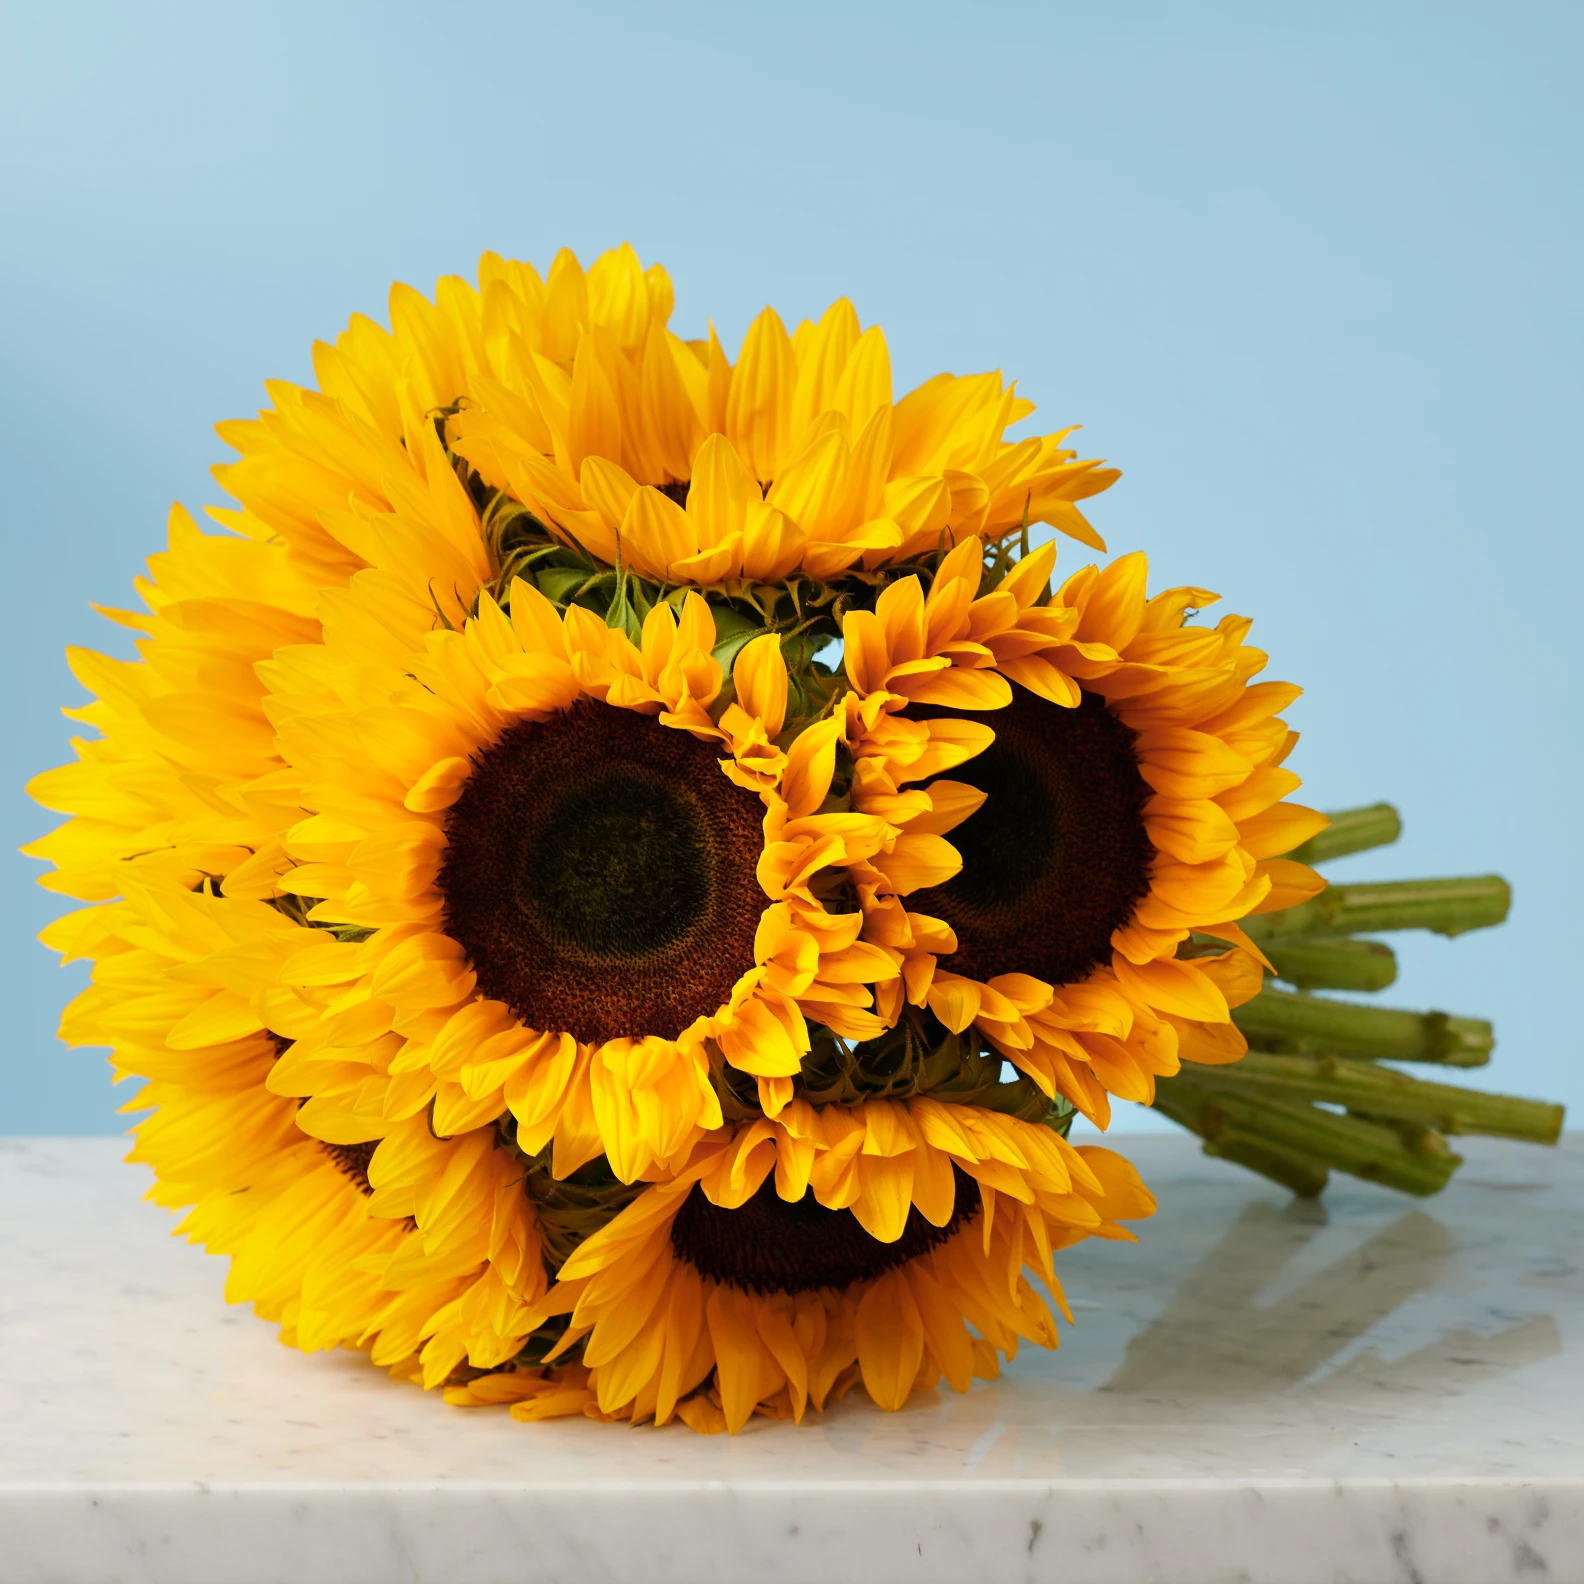 10 Sunflowers - image №4